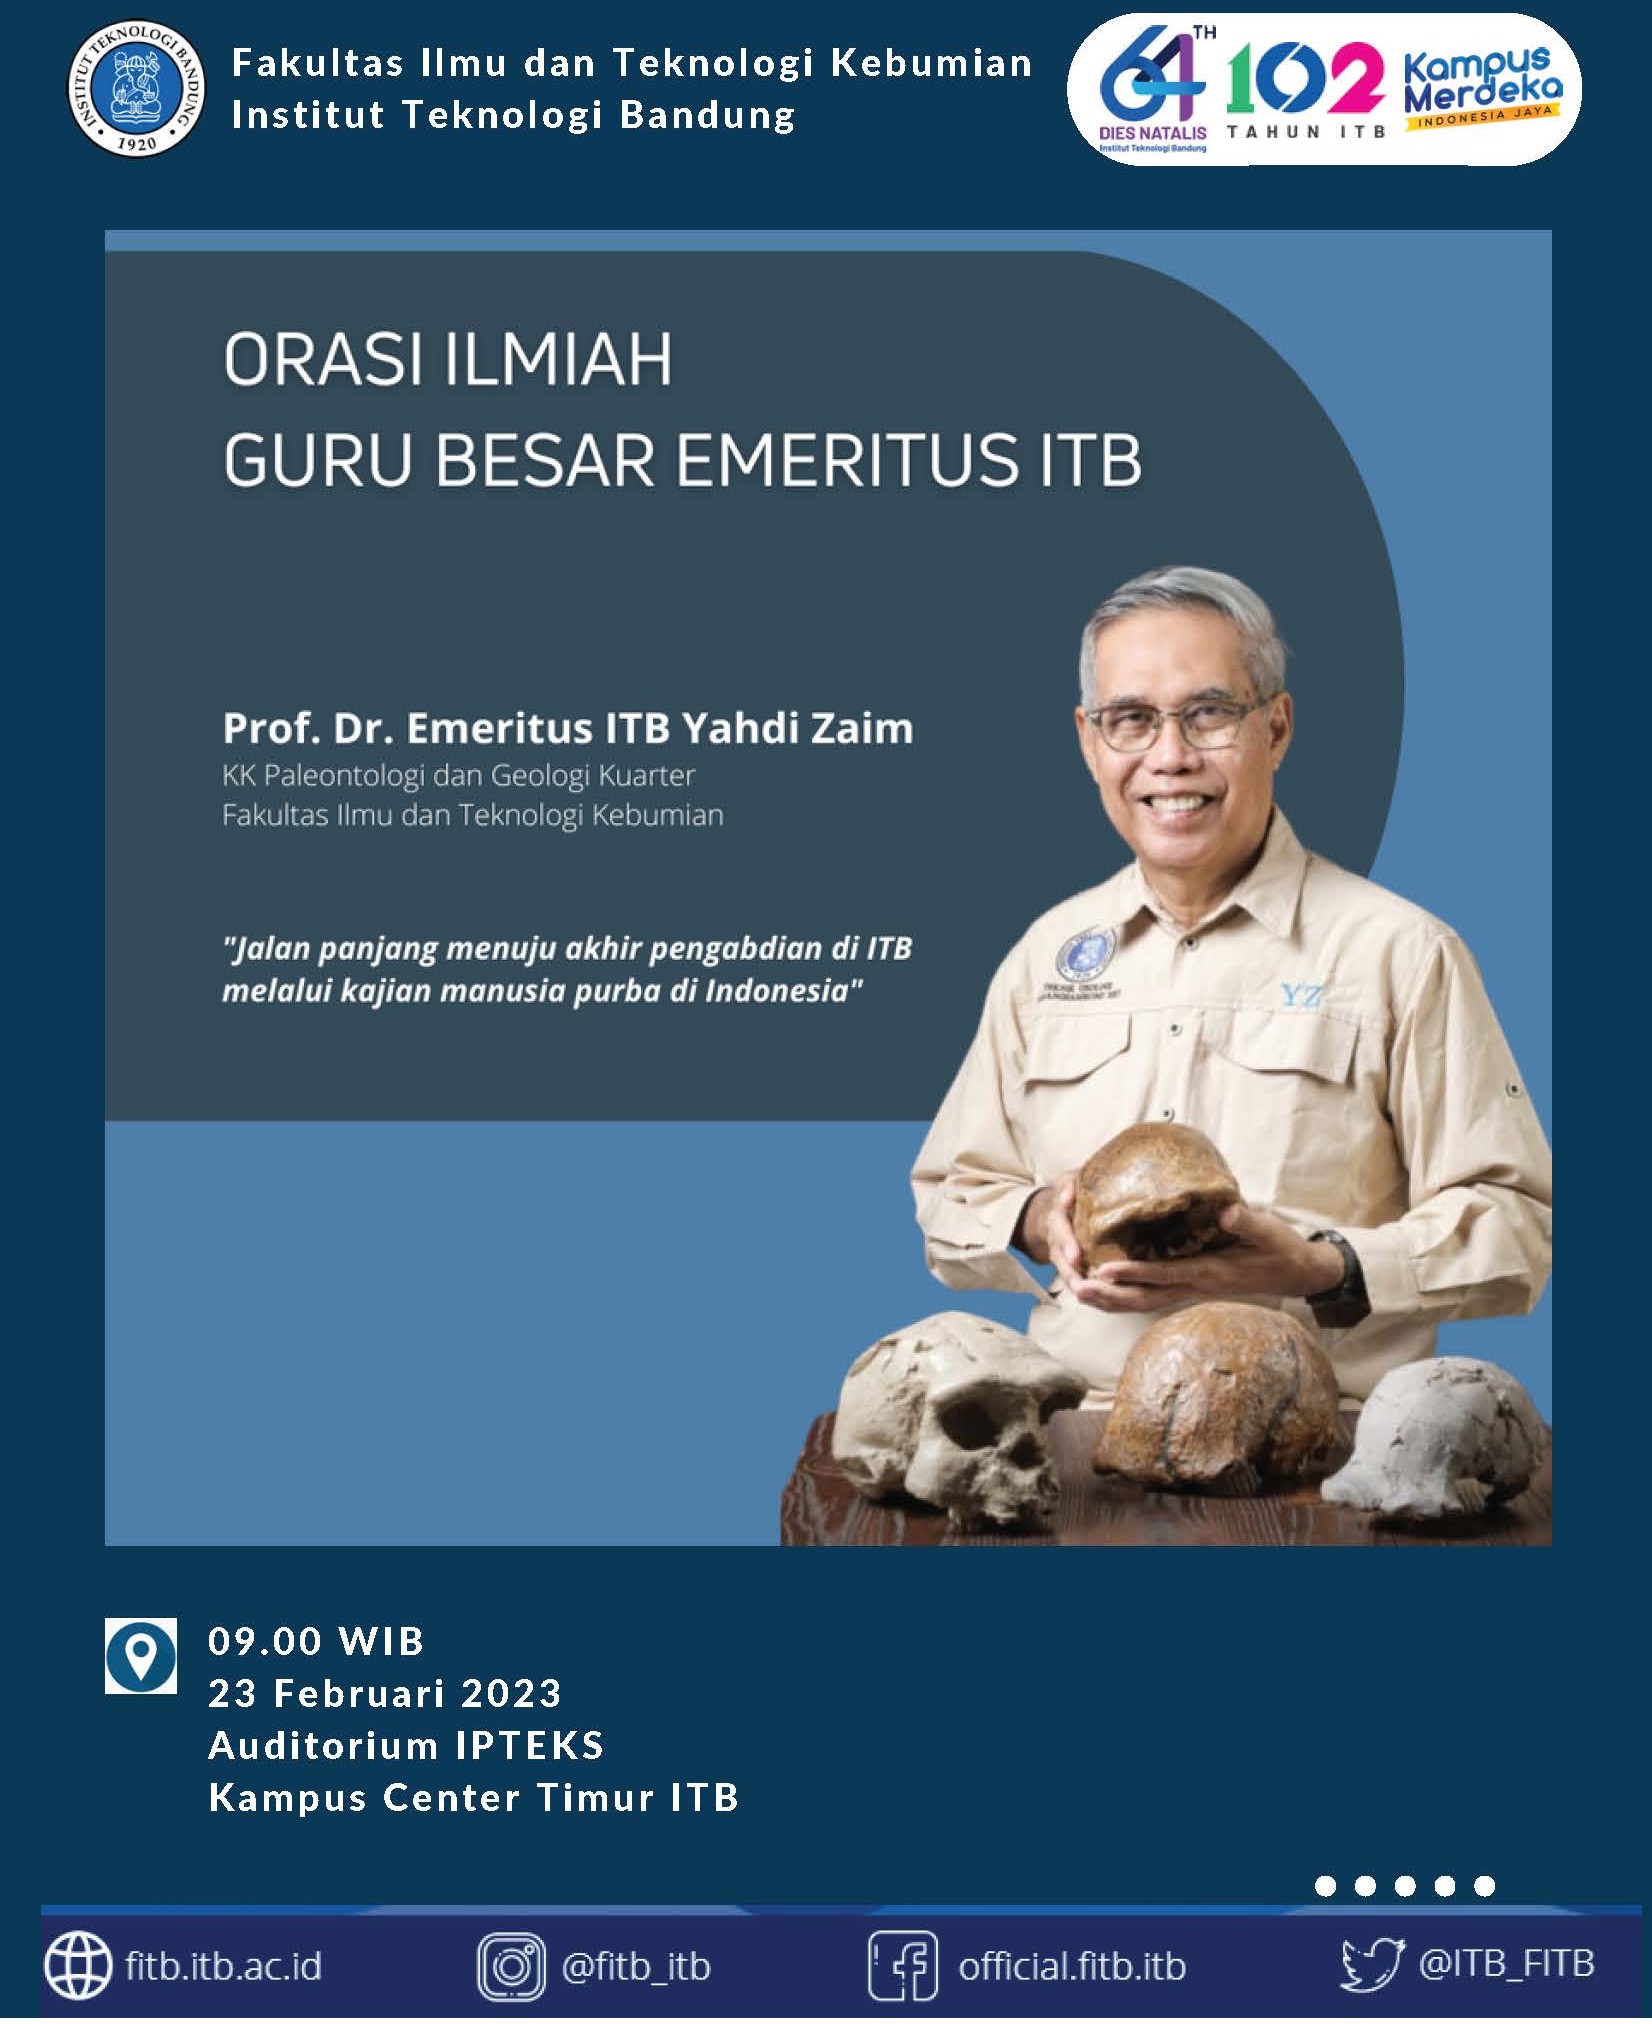 Undangan Menghadiri Orasi Ilmiah Guru Besar Emeritus ITB: Prof. Dr. Emeritus ITB Yahdi Zaim